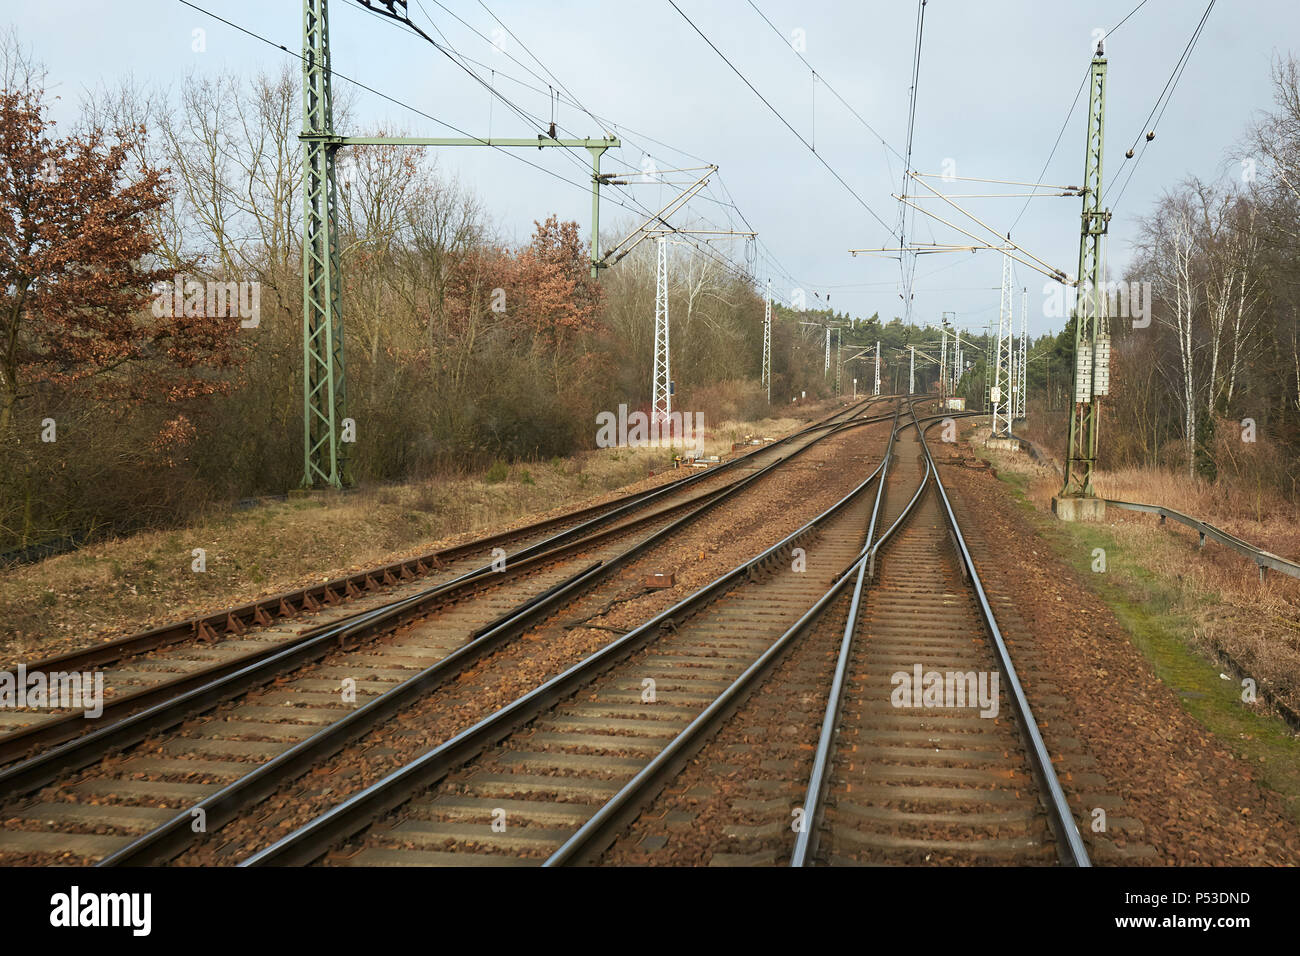 Berlin, Deutschland - Blick auf Multi-track railway Tracks aus einem fahrenden Zug in Berlin-Wuhlheide. Stockfoto